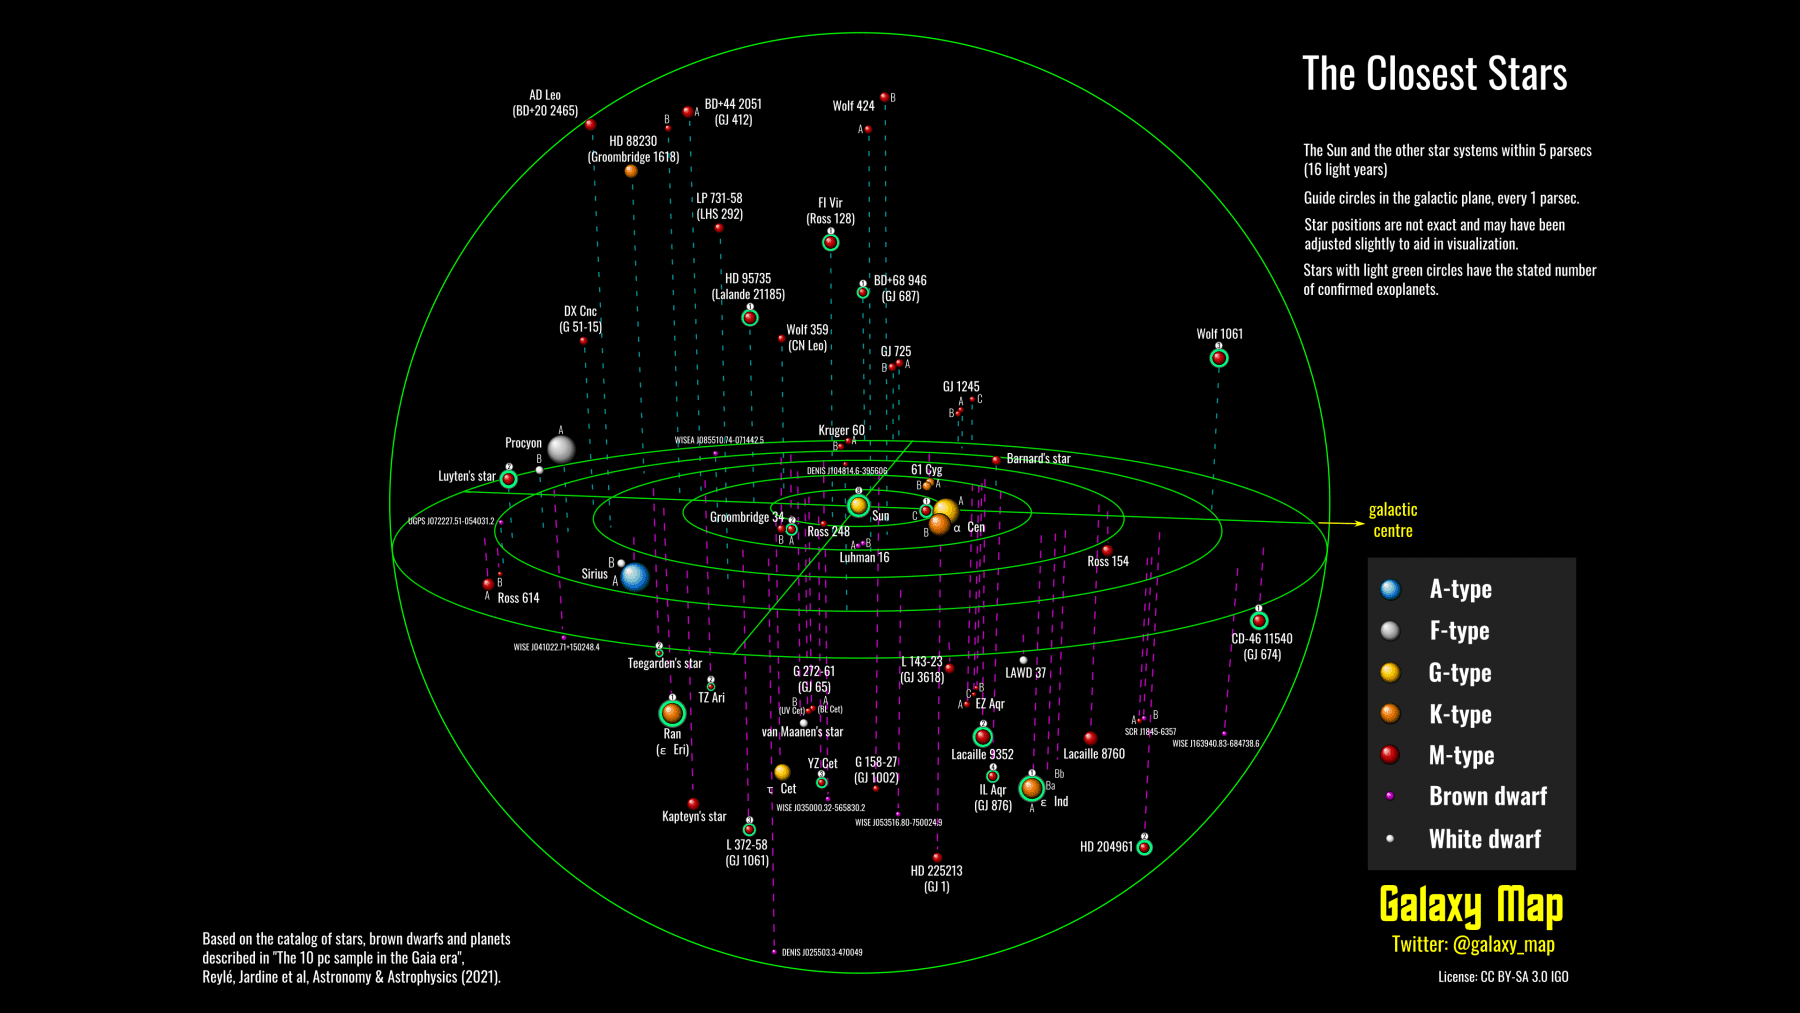 Звездные системы в диапазоне 5 парсеков. Кредит: Galaxymap.org